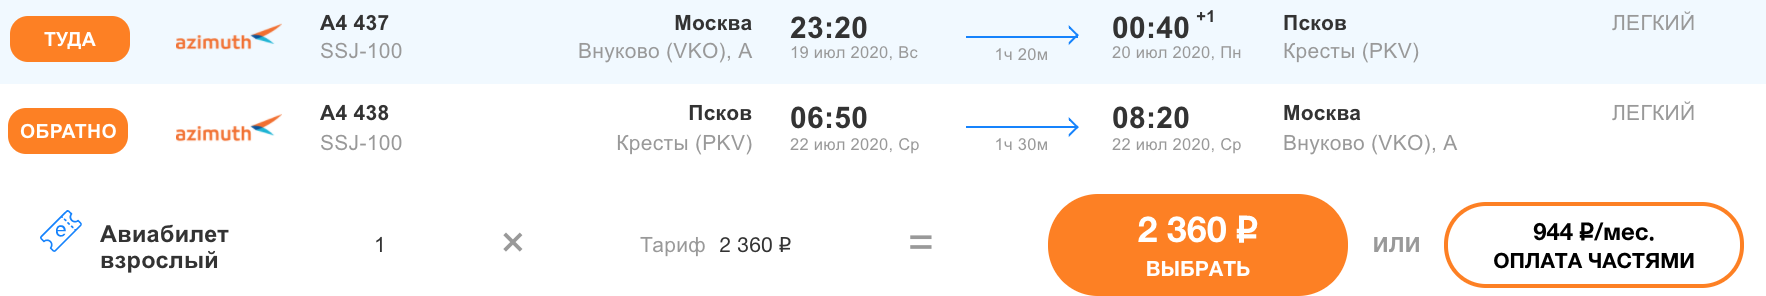 Стоимость билета ростов новосибирск самолет авиабилеты оренбург симферополь прямой рейс